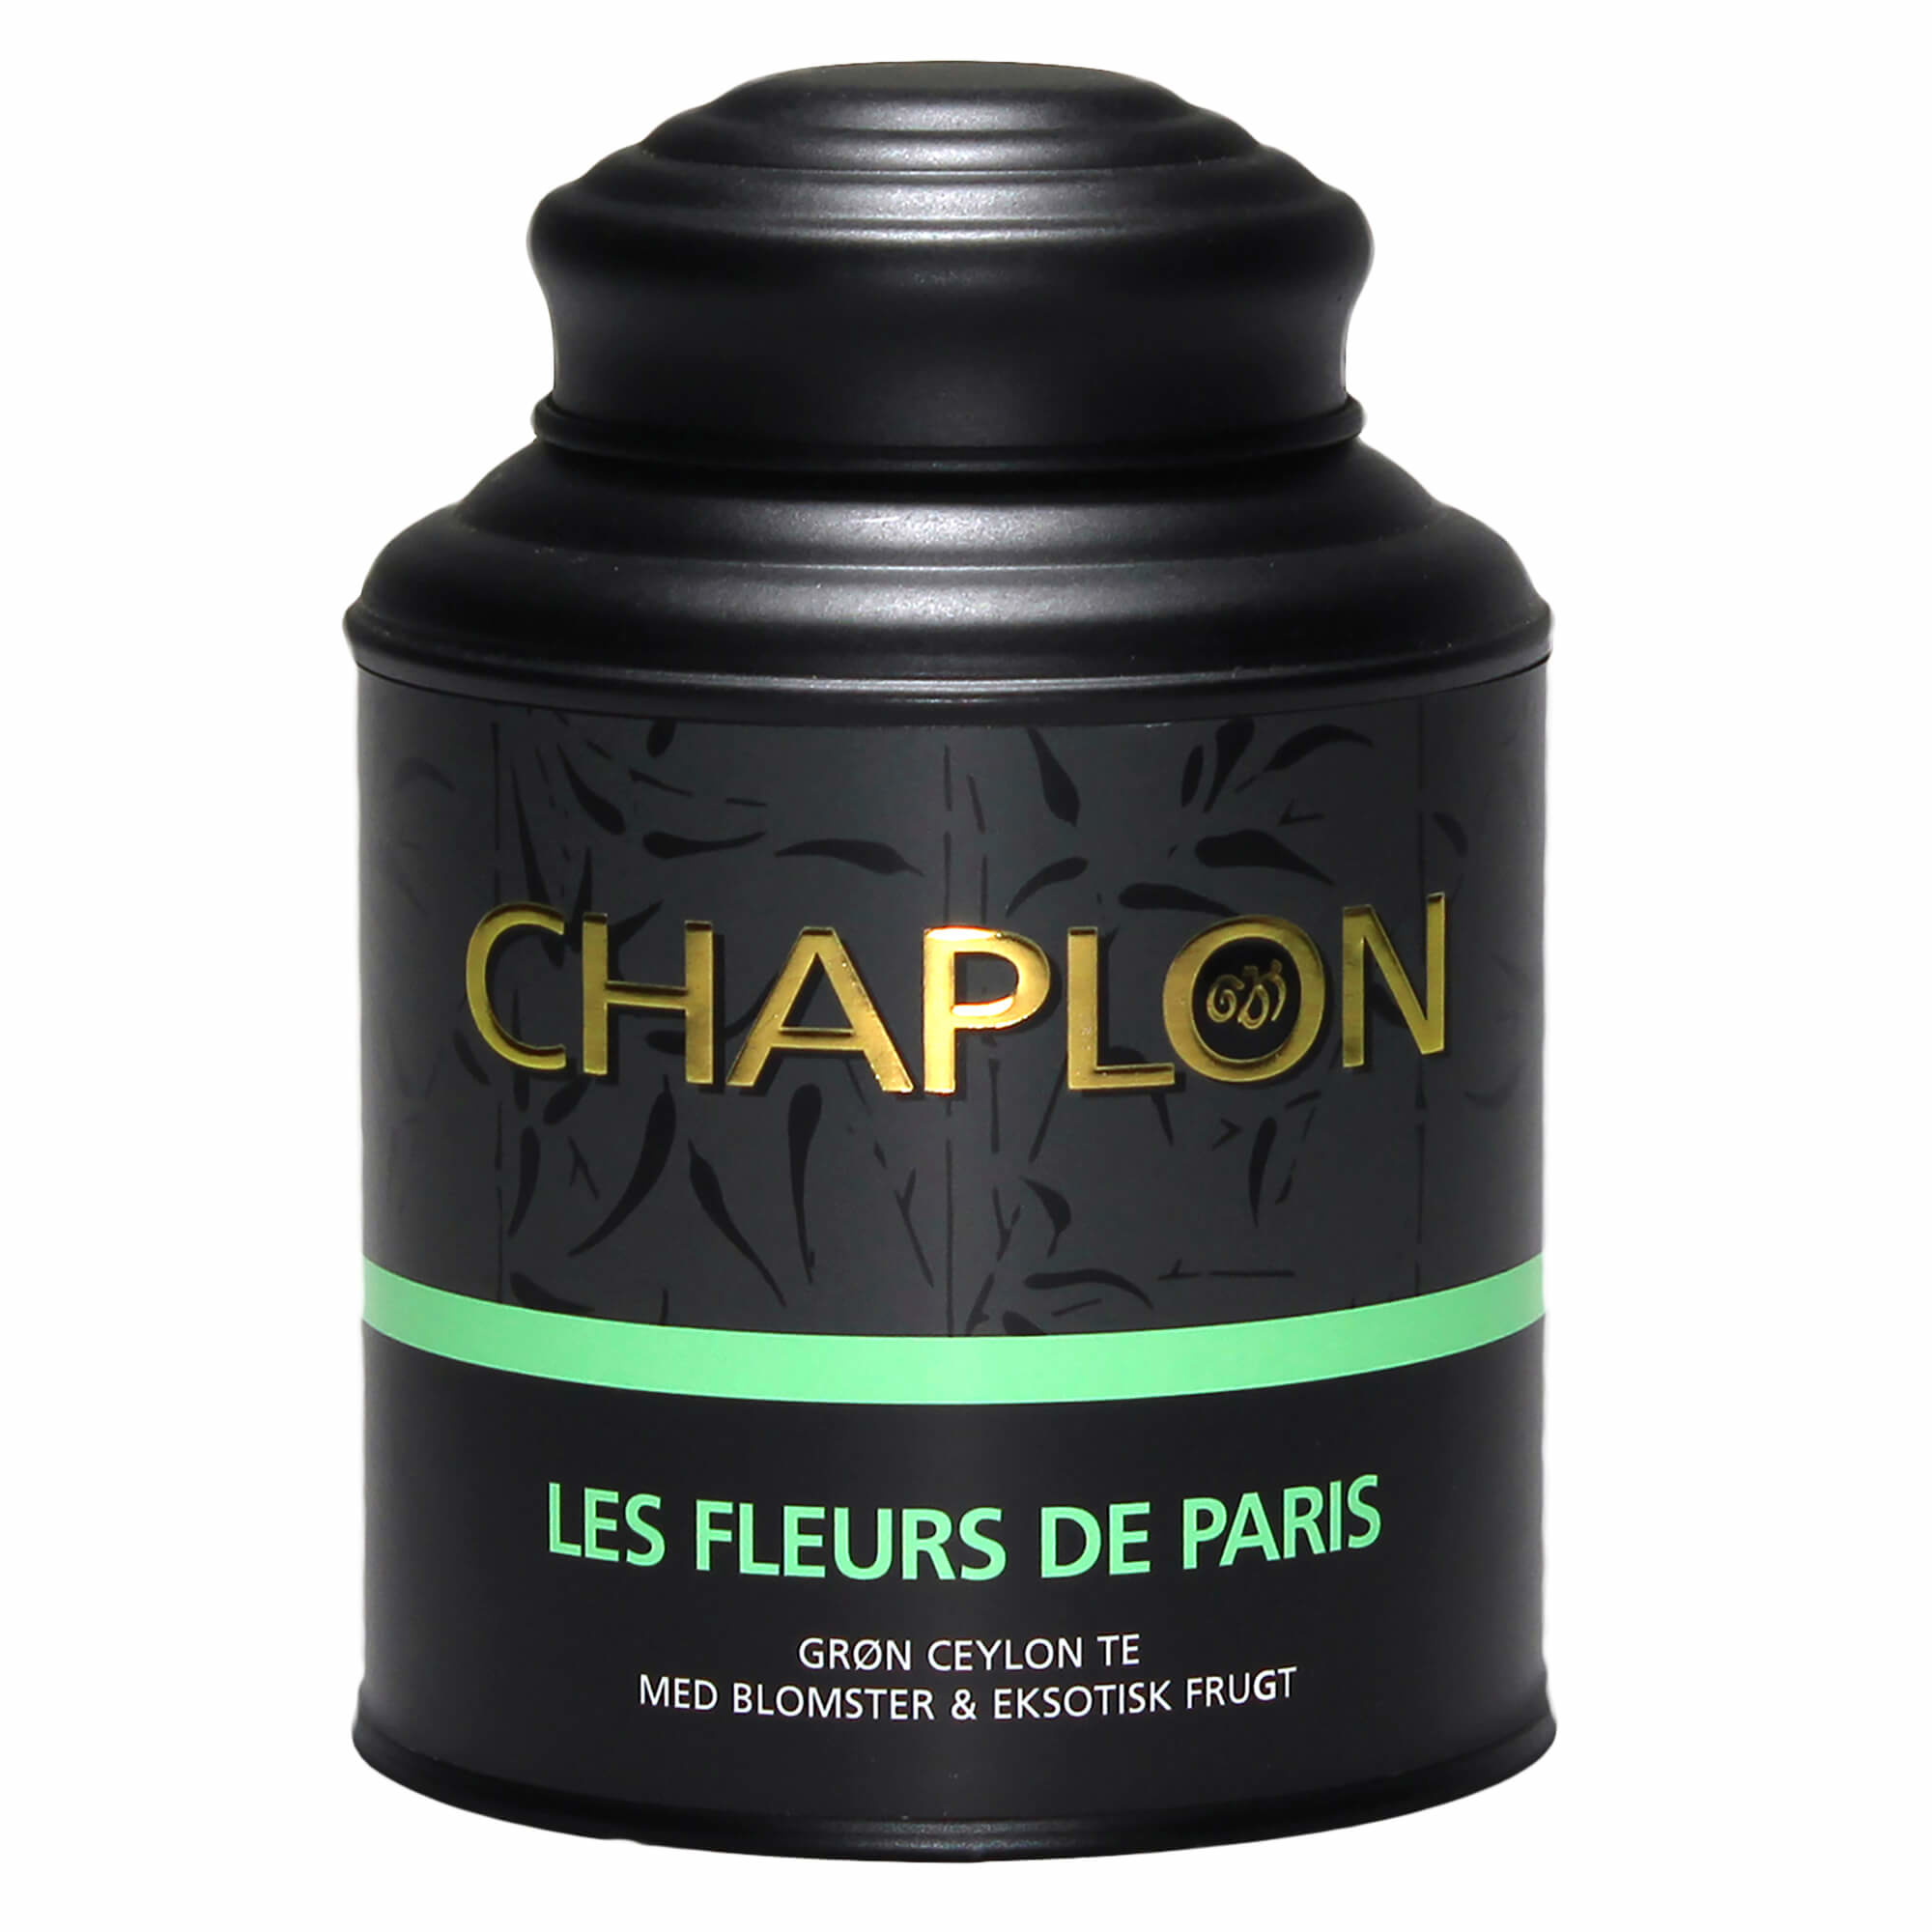 Chaplon Les fleurs de Paris Te - 160 gram dåse thumbnail